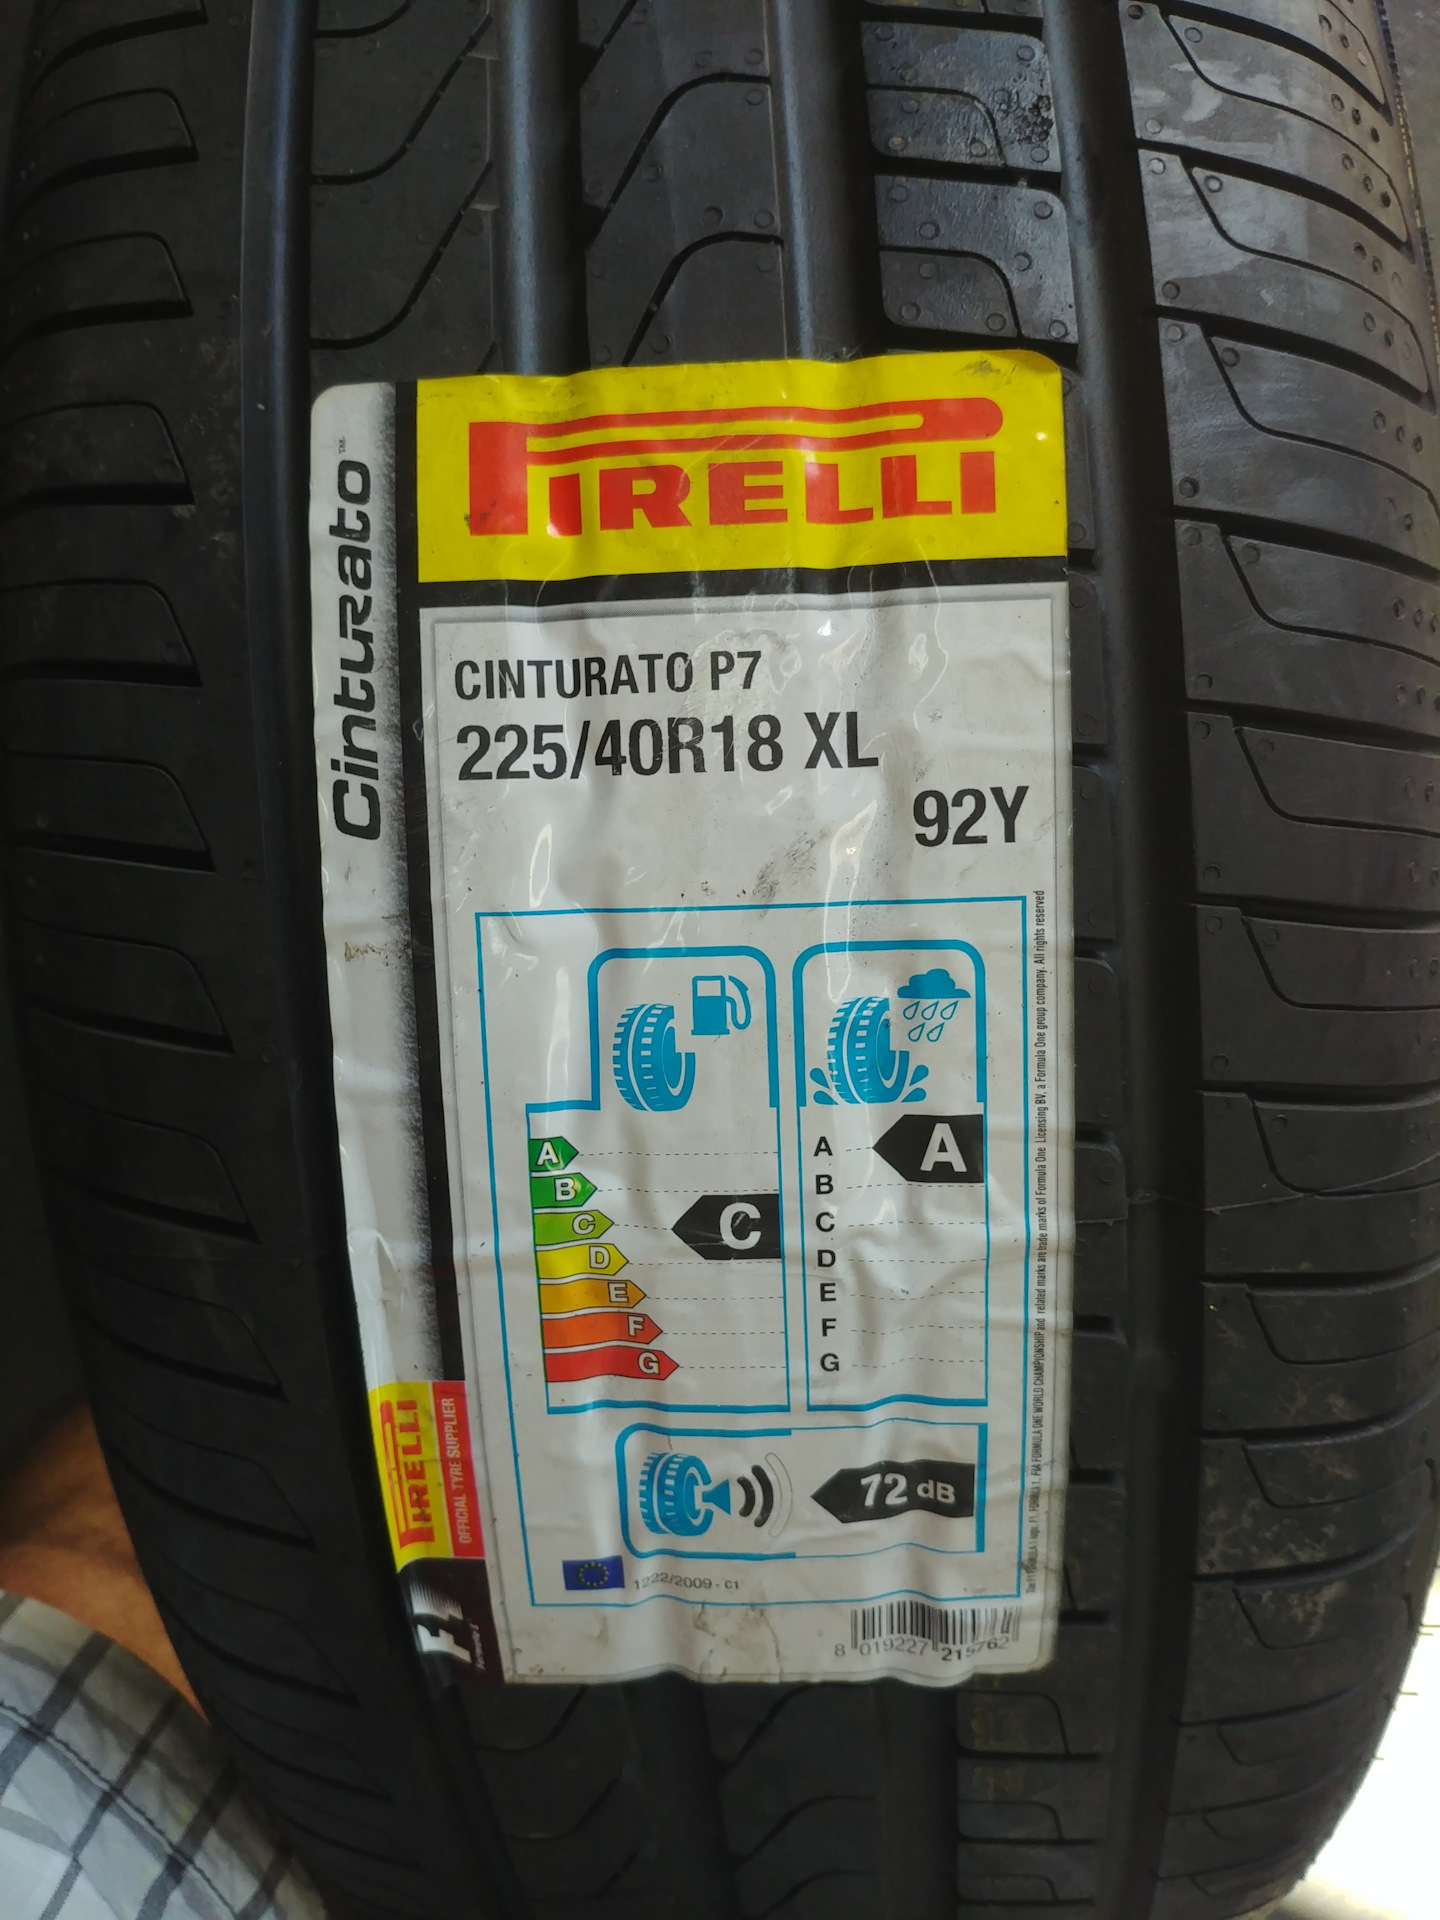 Pirelli powergy 235 45 r18 98y. Pirelli 225/40r18 92y Powergy (XL). Pirelli 225/40r18 92y XL Powergy TL. Pirelli 225/40/18 92y Powergy XL. Pirelli Powergy 225/40 r18.